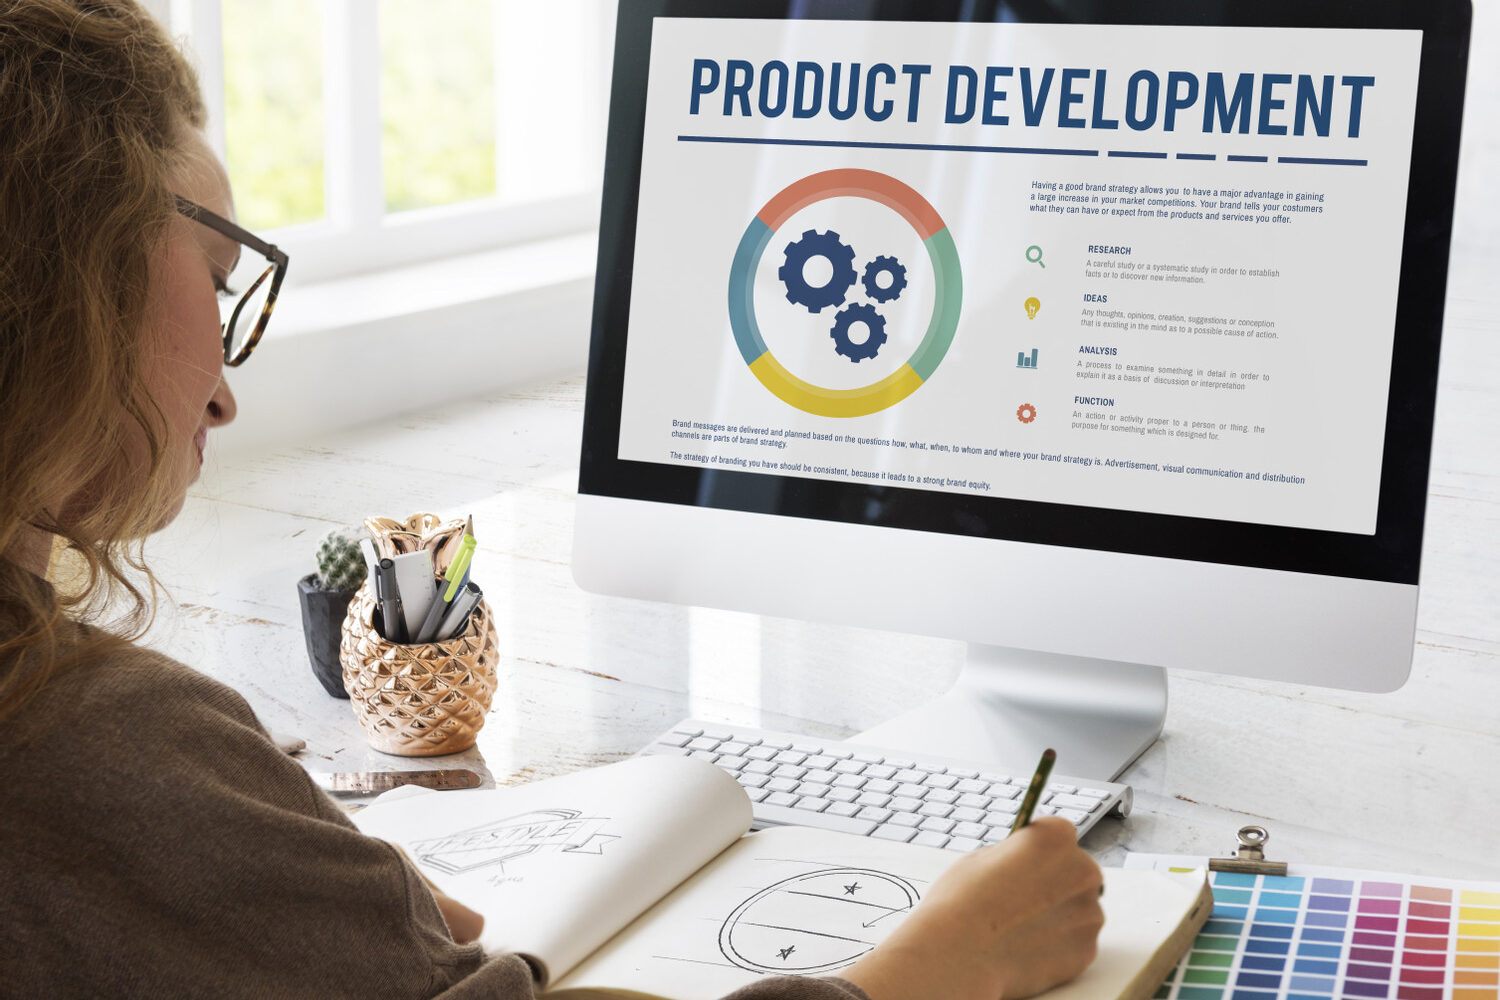 Product,Development,Improve,Ideas,Concept